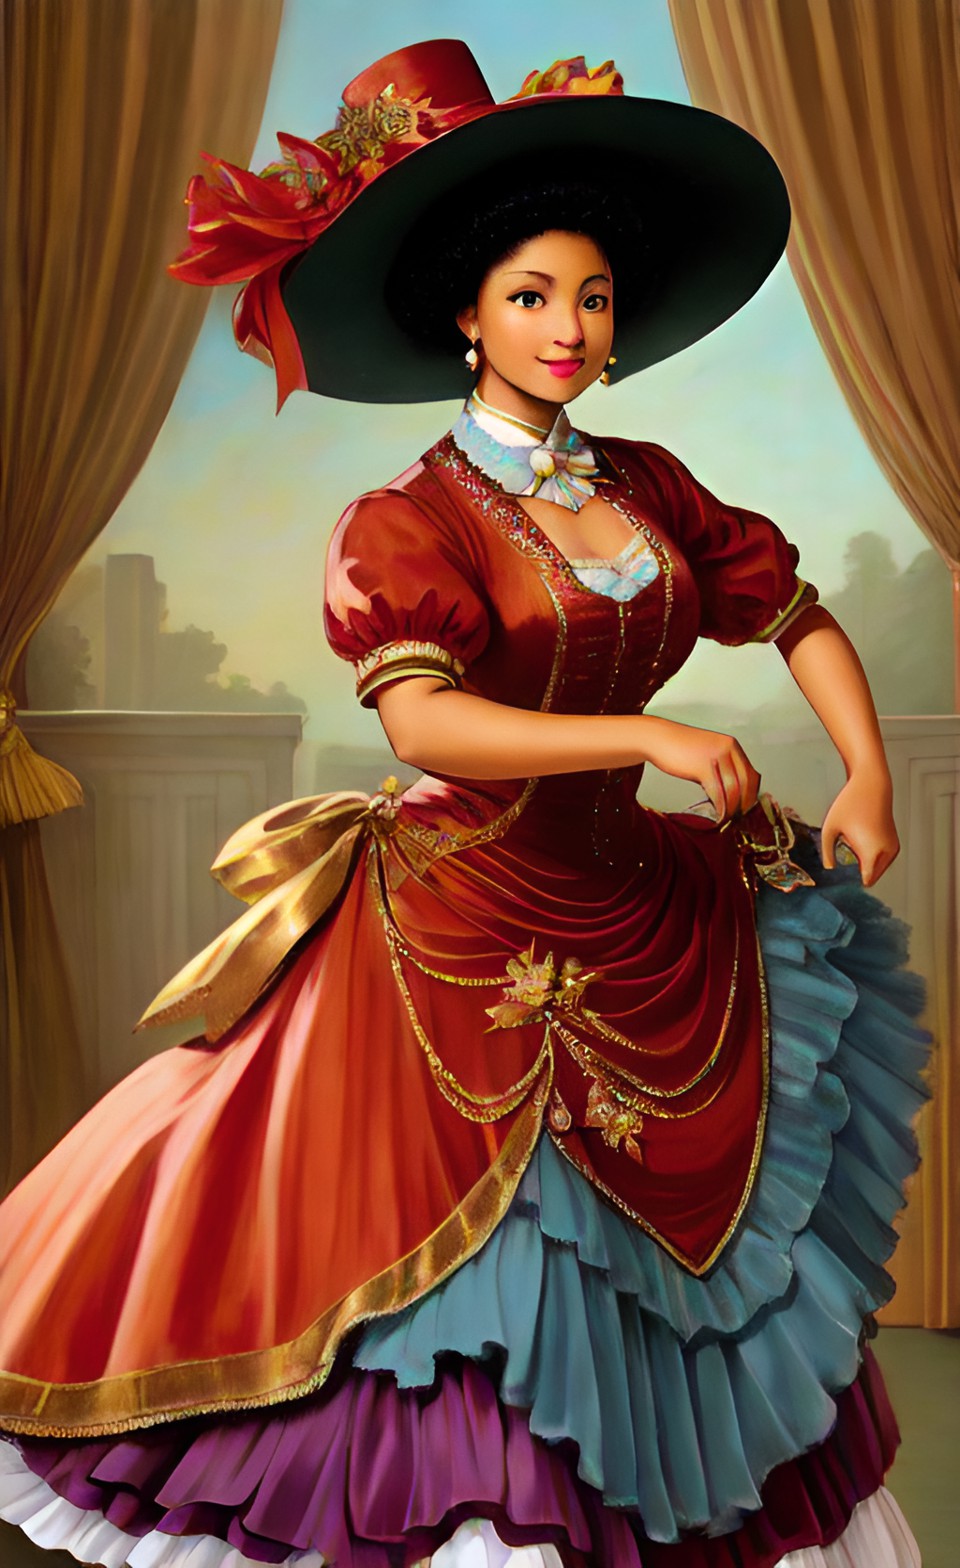 Mixed-race women in fine Shakespearean era party dresses Mixra222